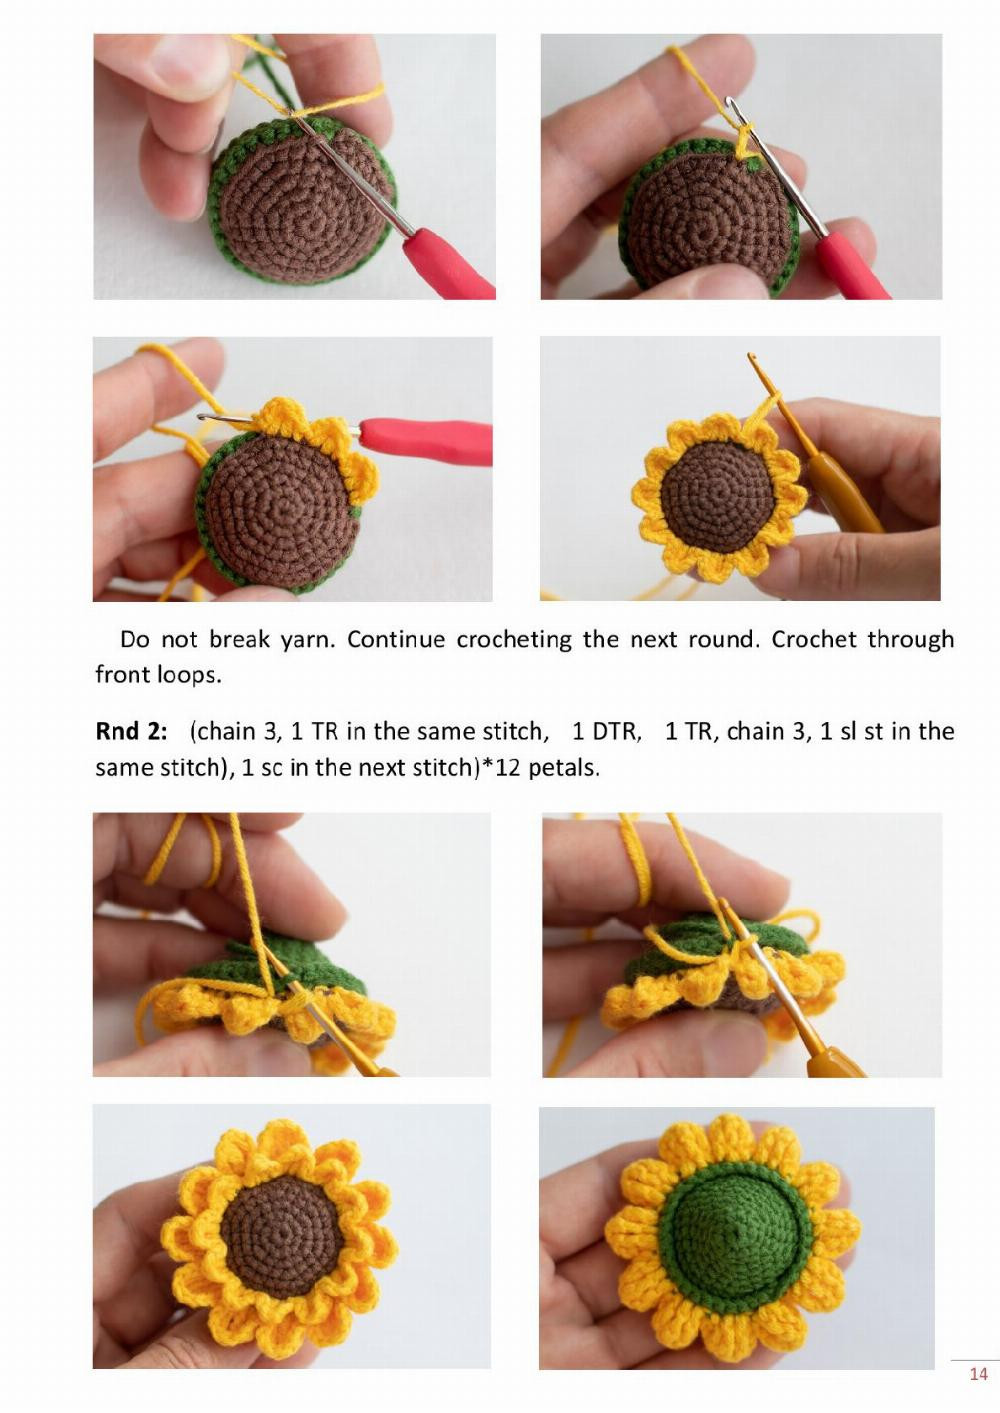 sunflowers in a mug crochet toy pattern